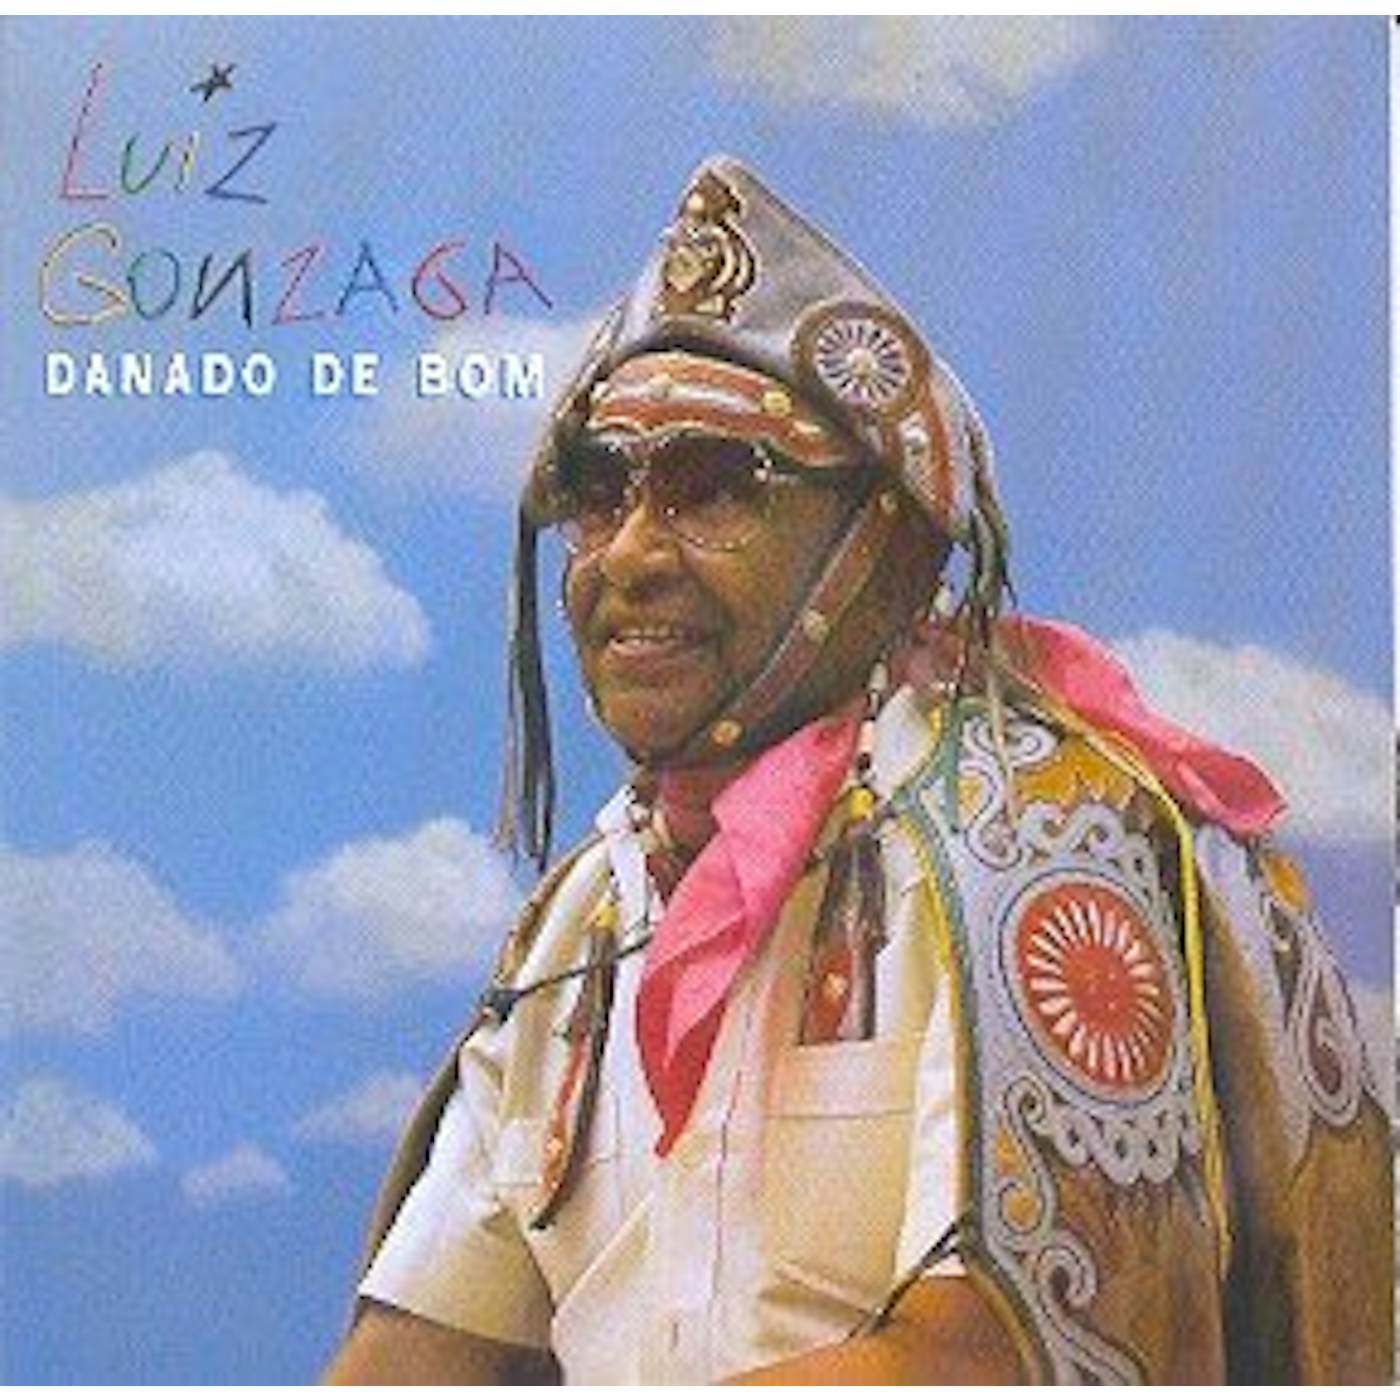 Luiz Gonzaga DANADO DE BOM CD